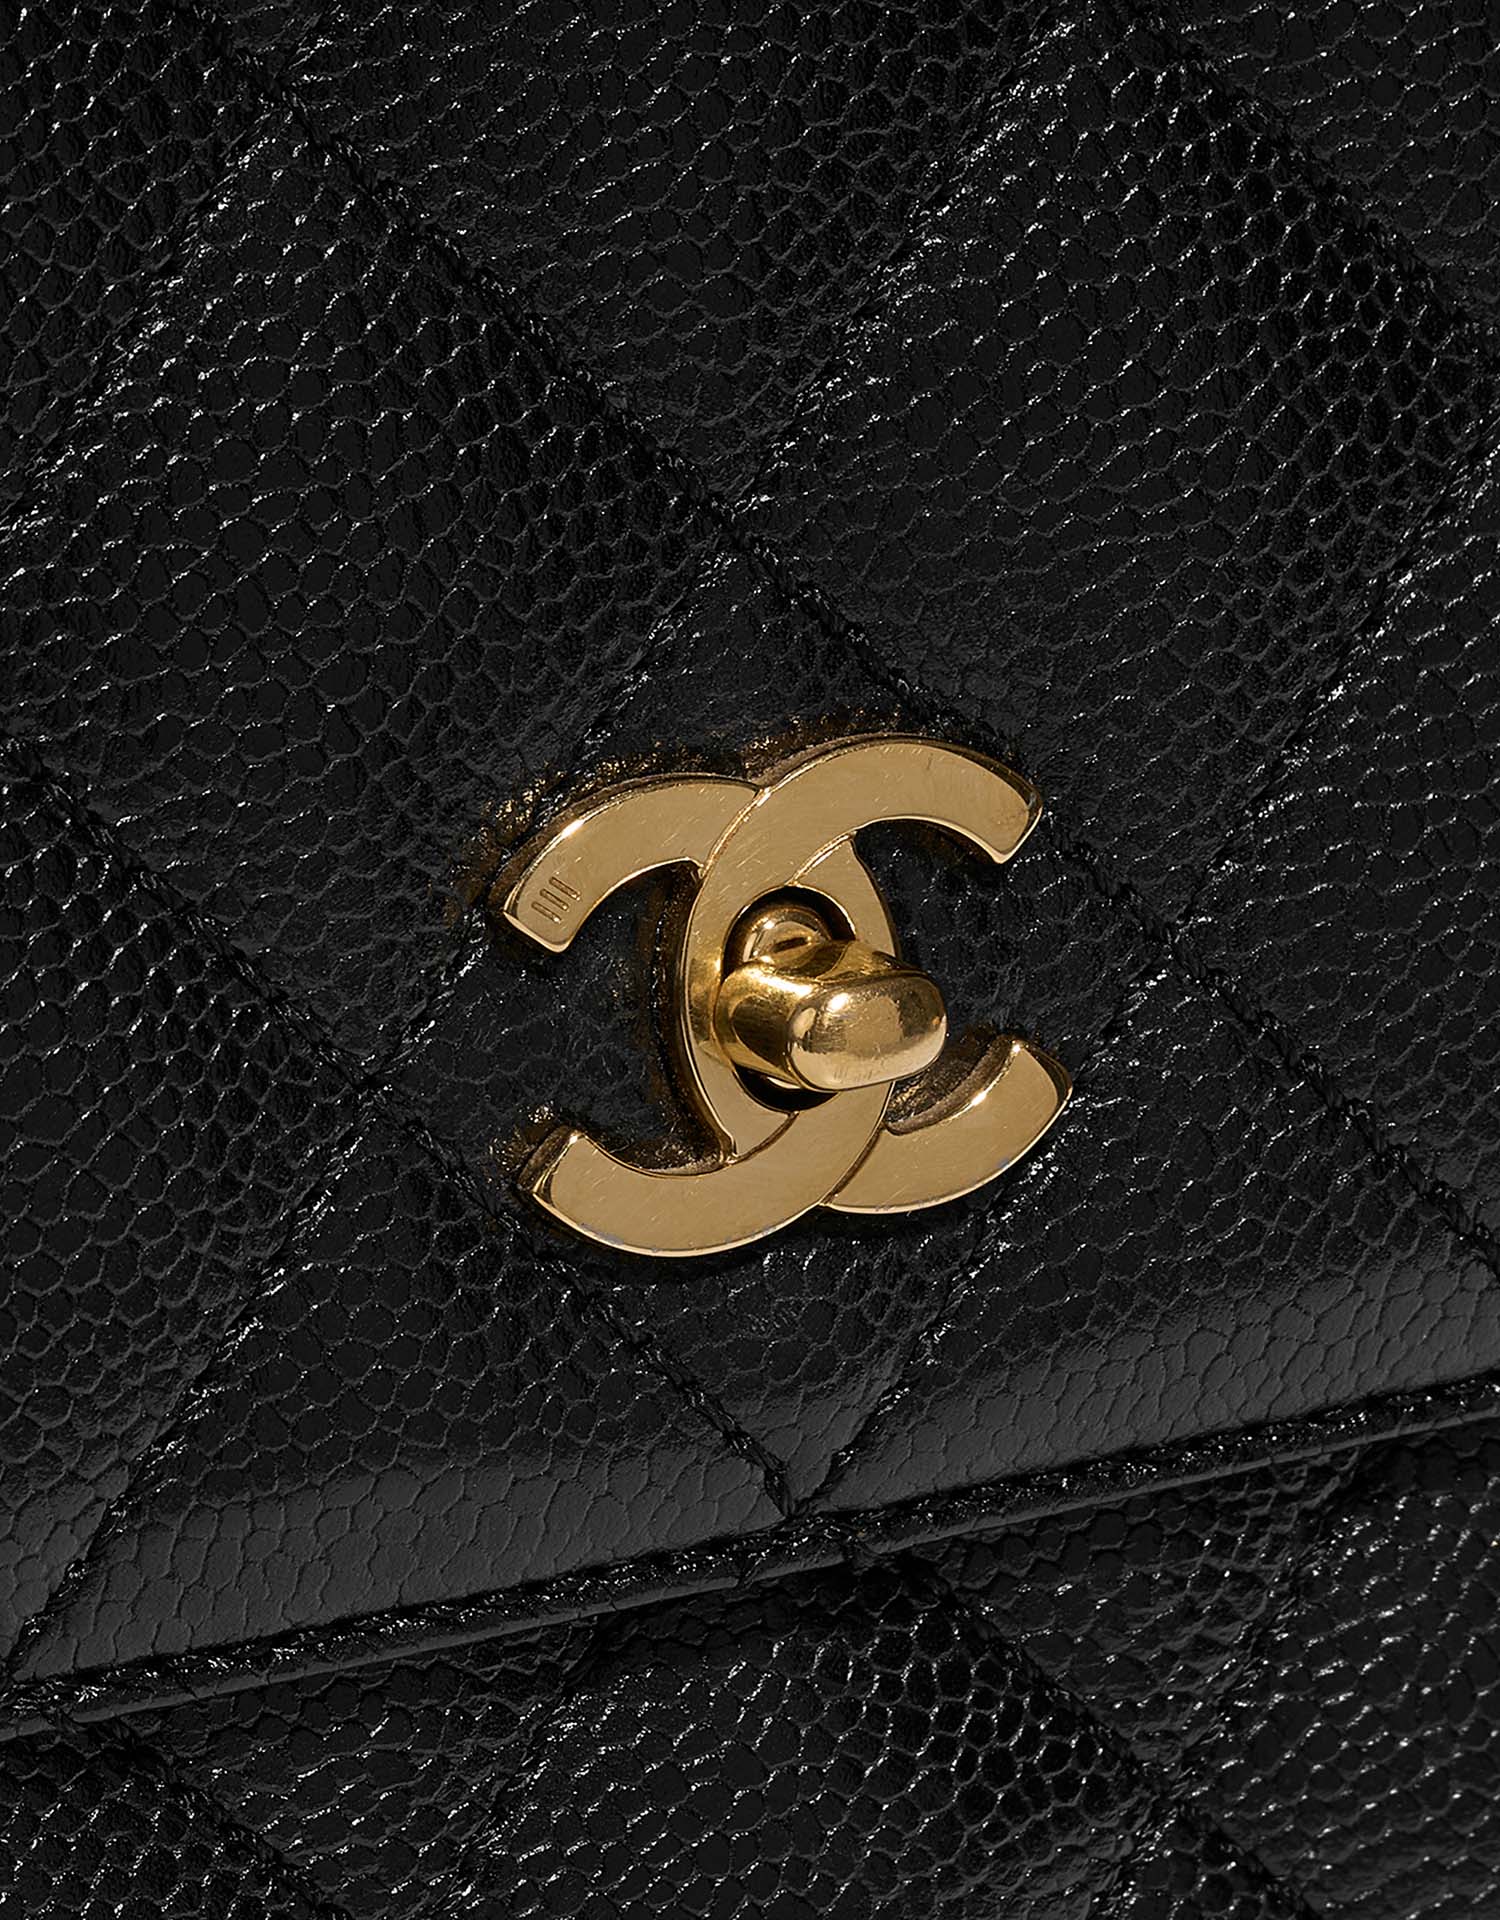 Chanel TimelessHandle Large Black Closing System | Verkaufen Sie Ihre Designer-Tasche auf Saclab.com